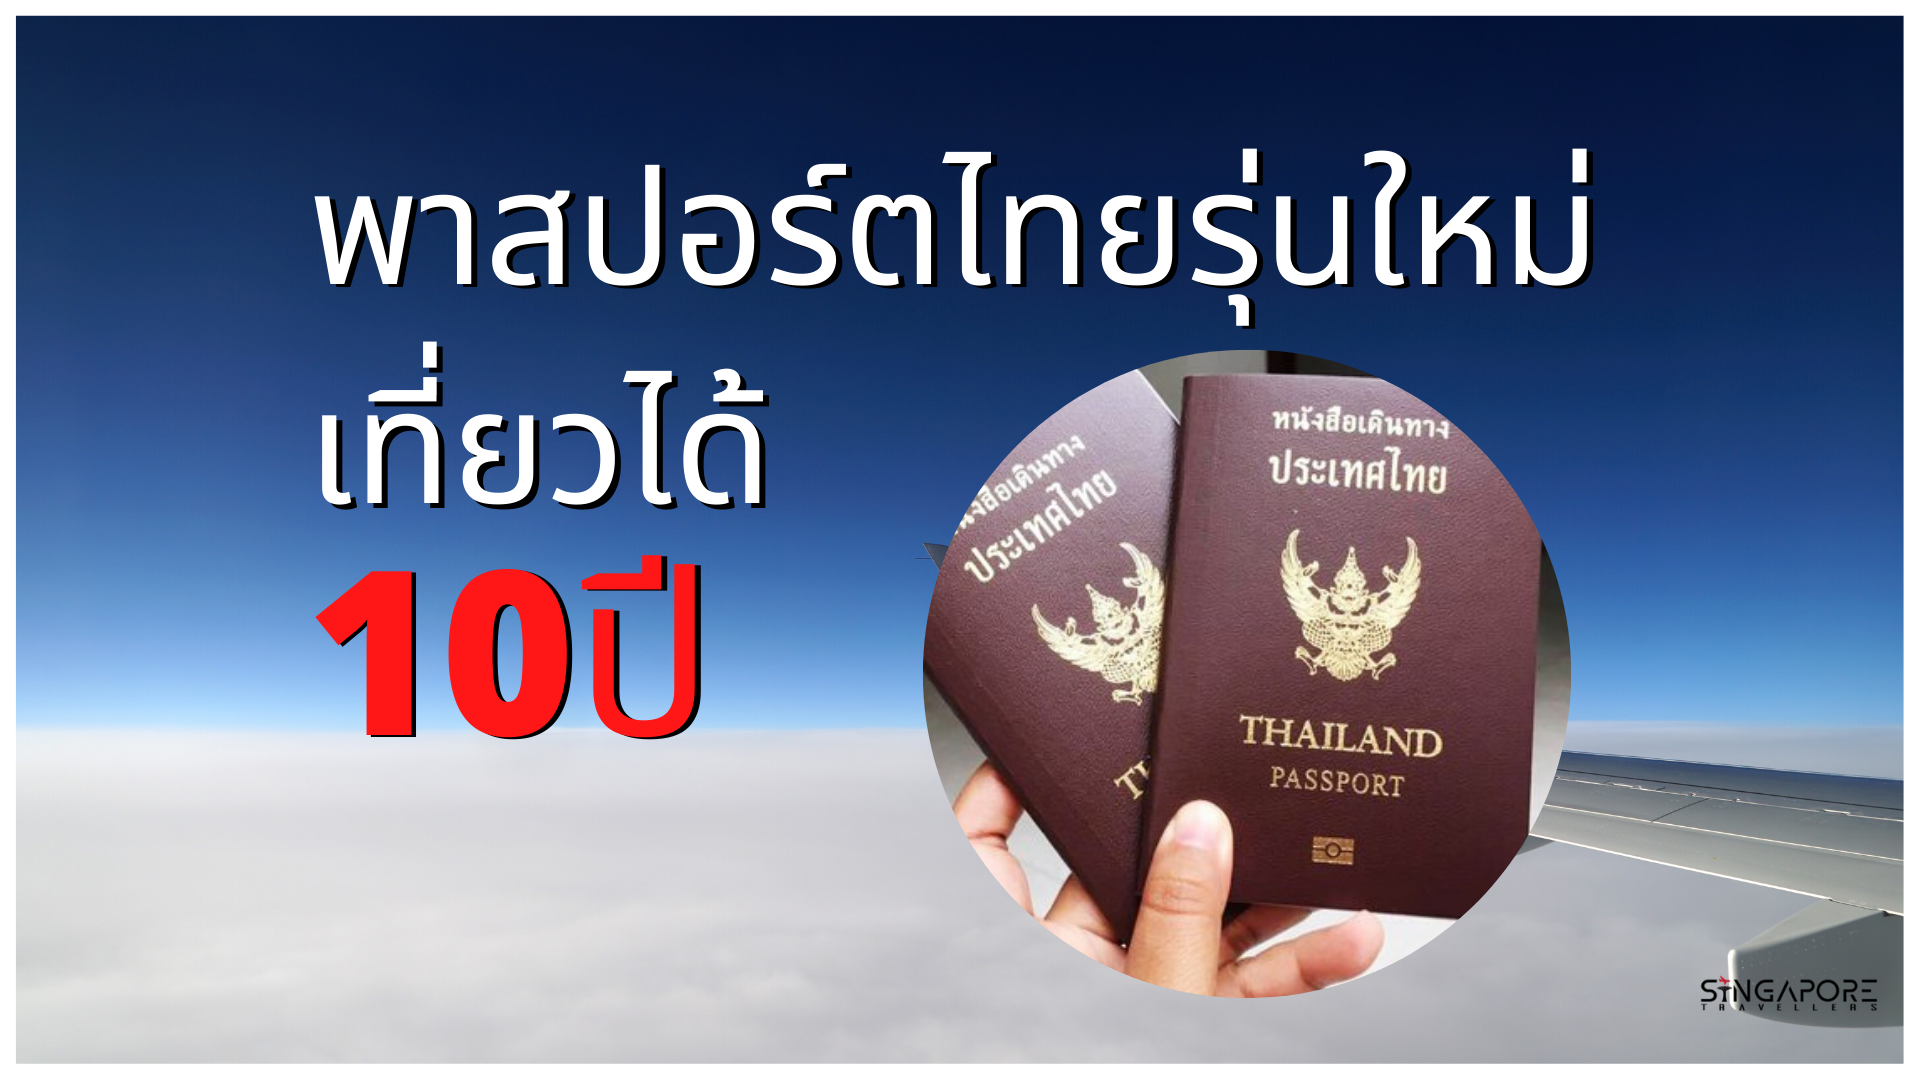 New Thai Passport